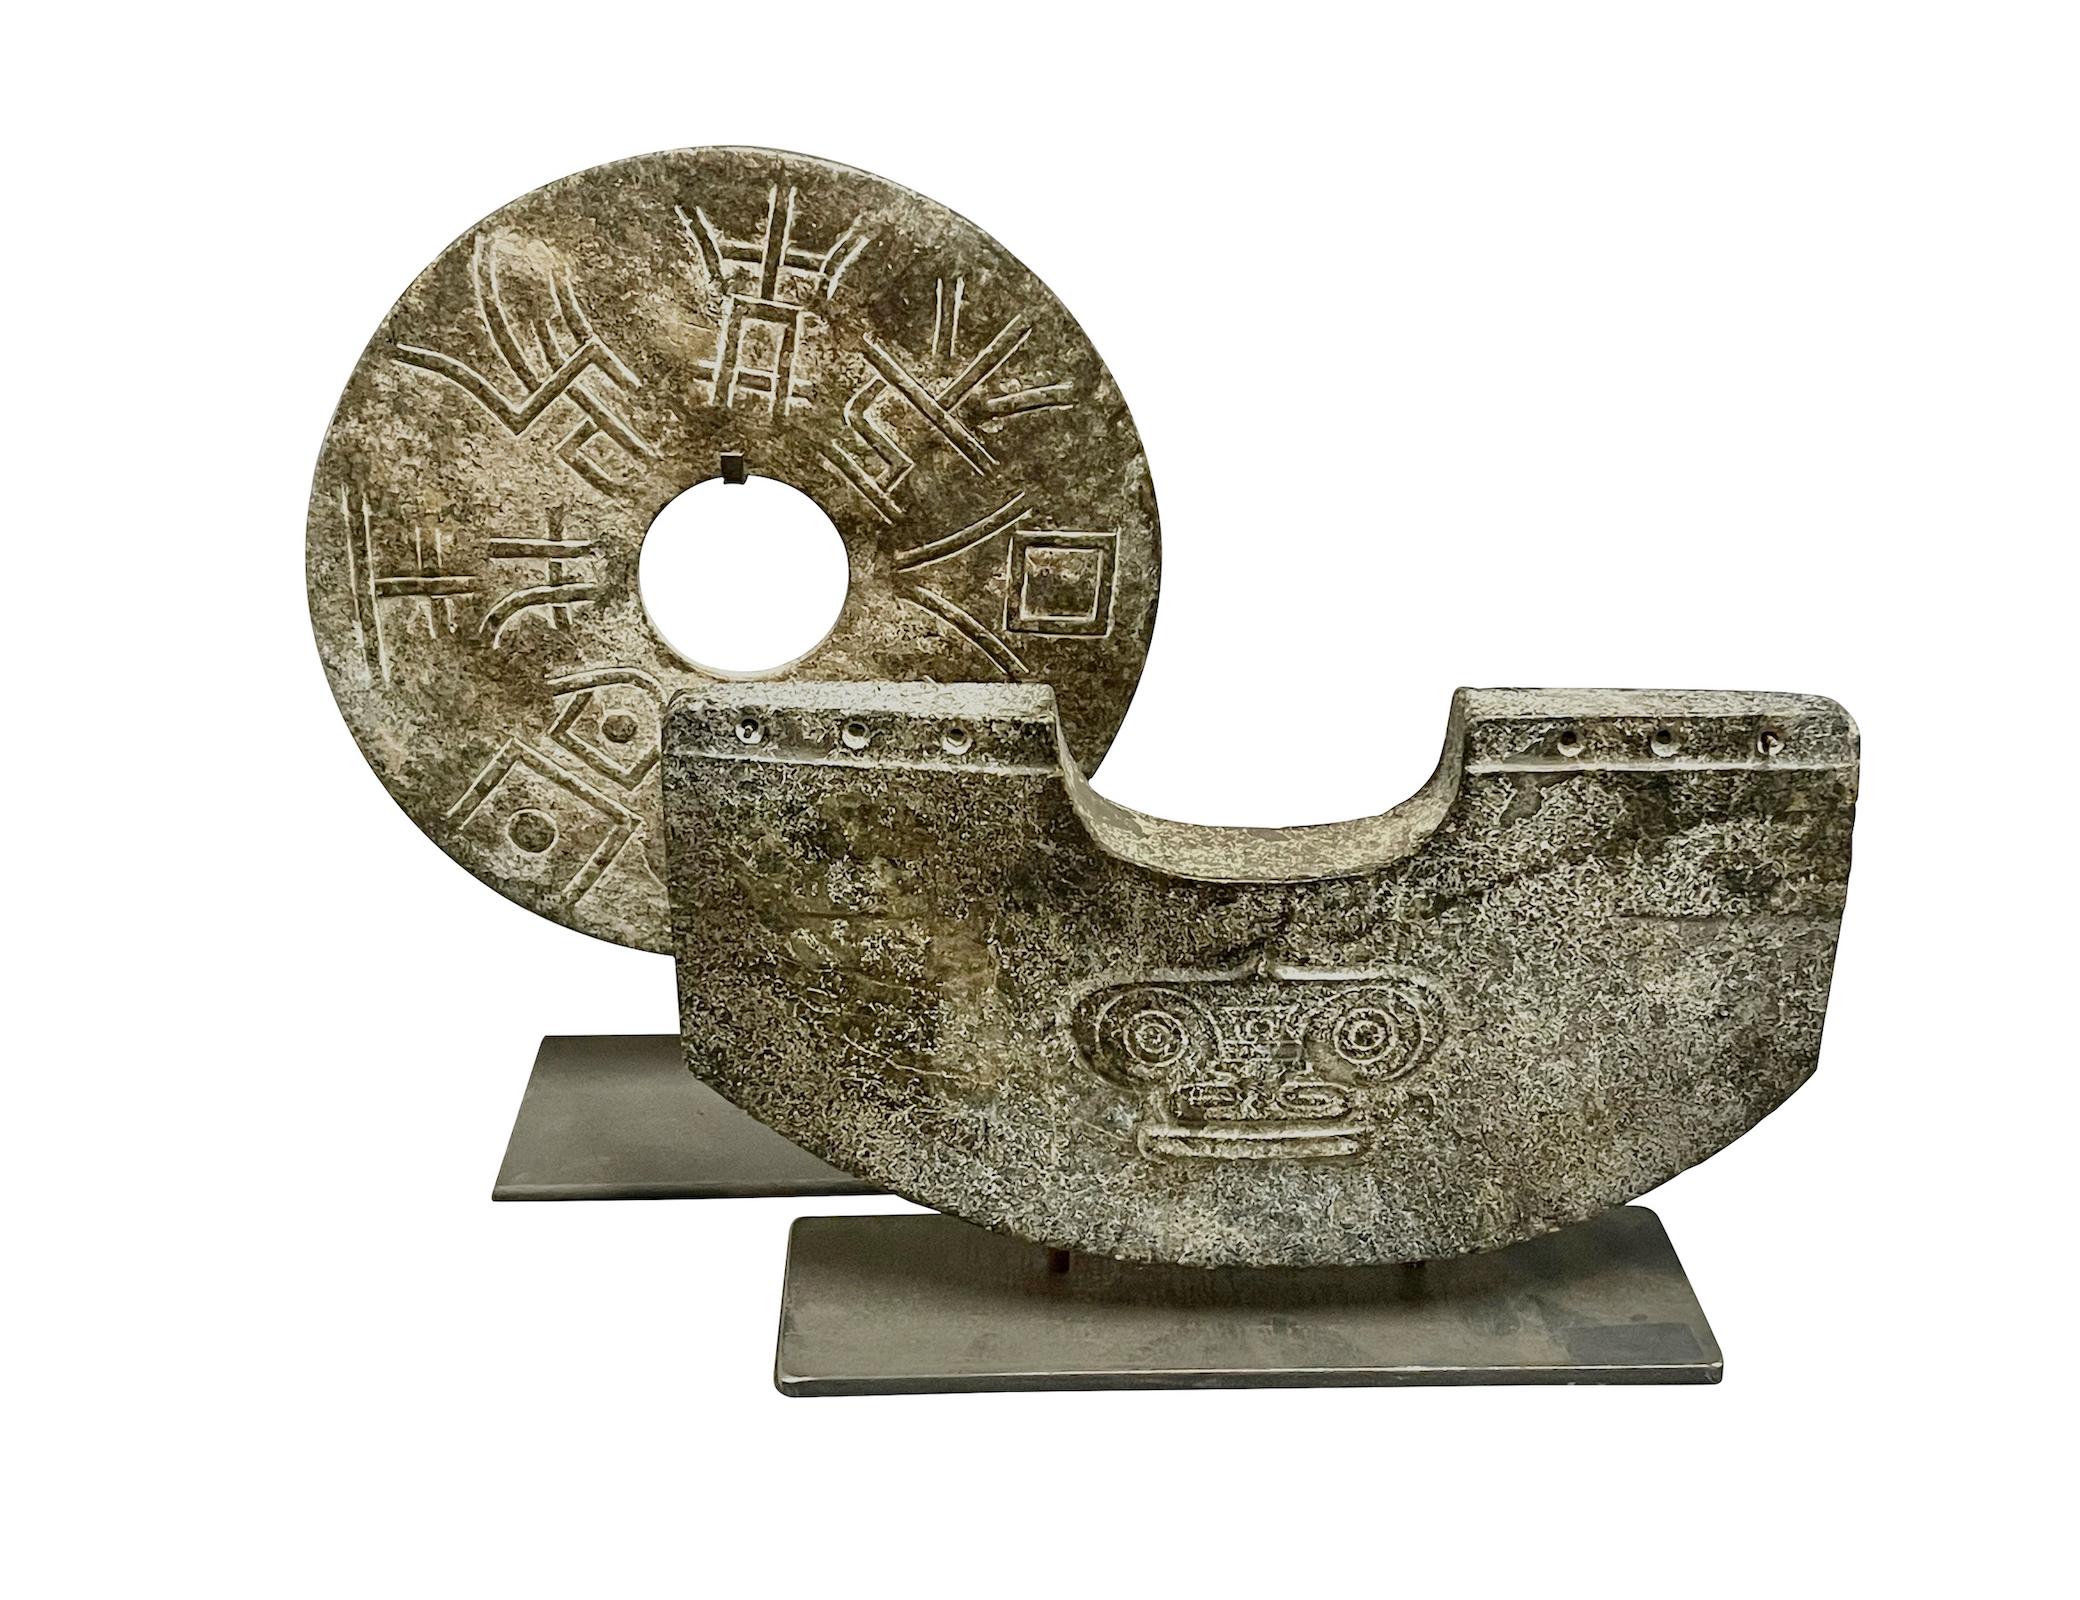 Stone Handgeschnitzte Halbkreisscheibe auf Metall Stand, China, Contemporary (Stein)